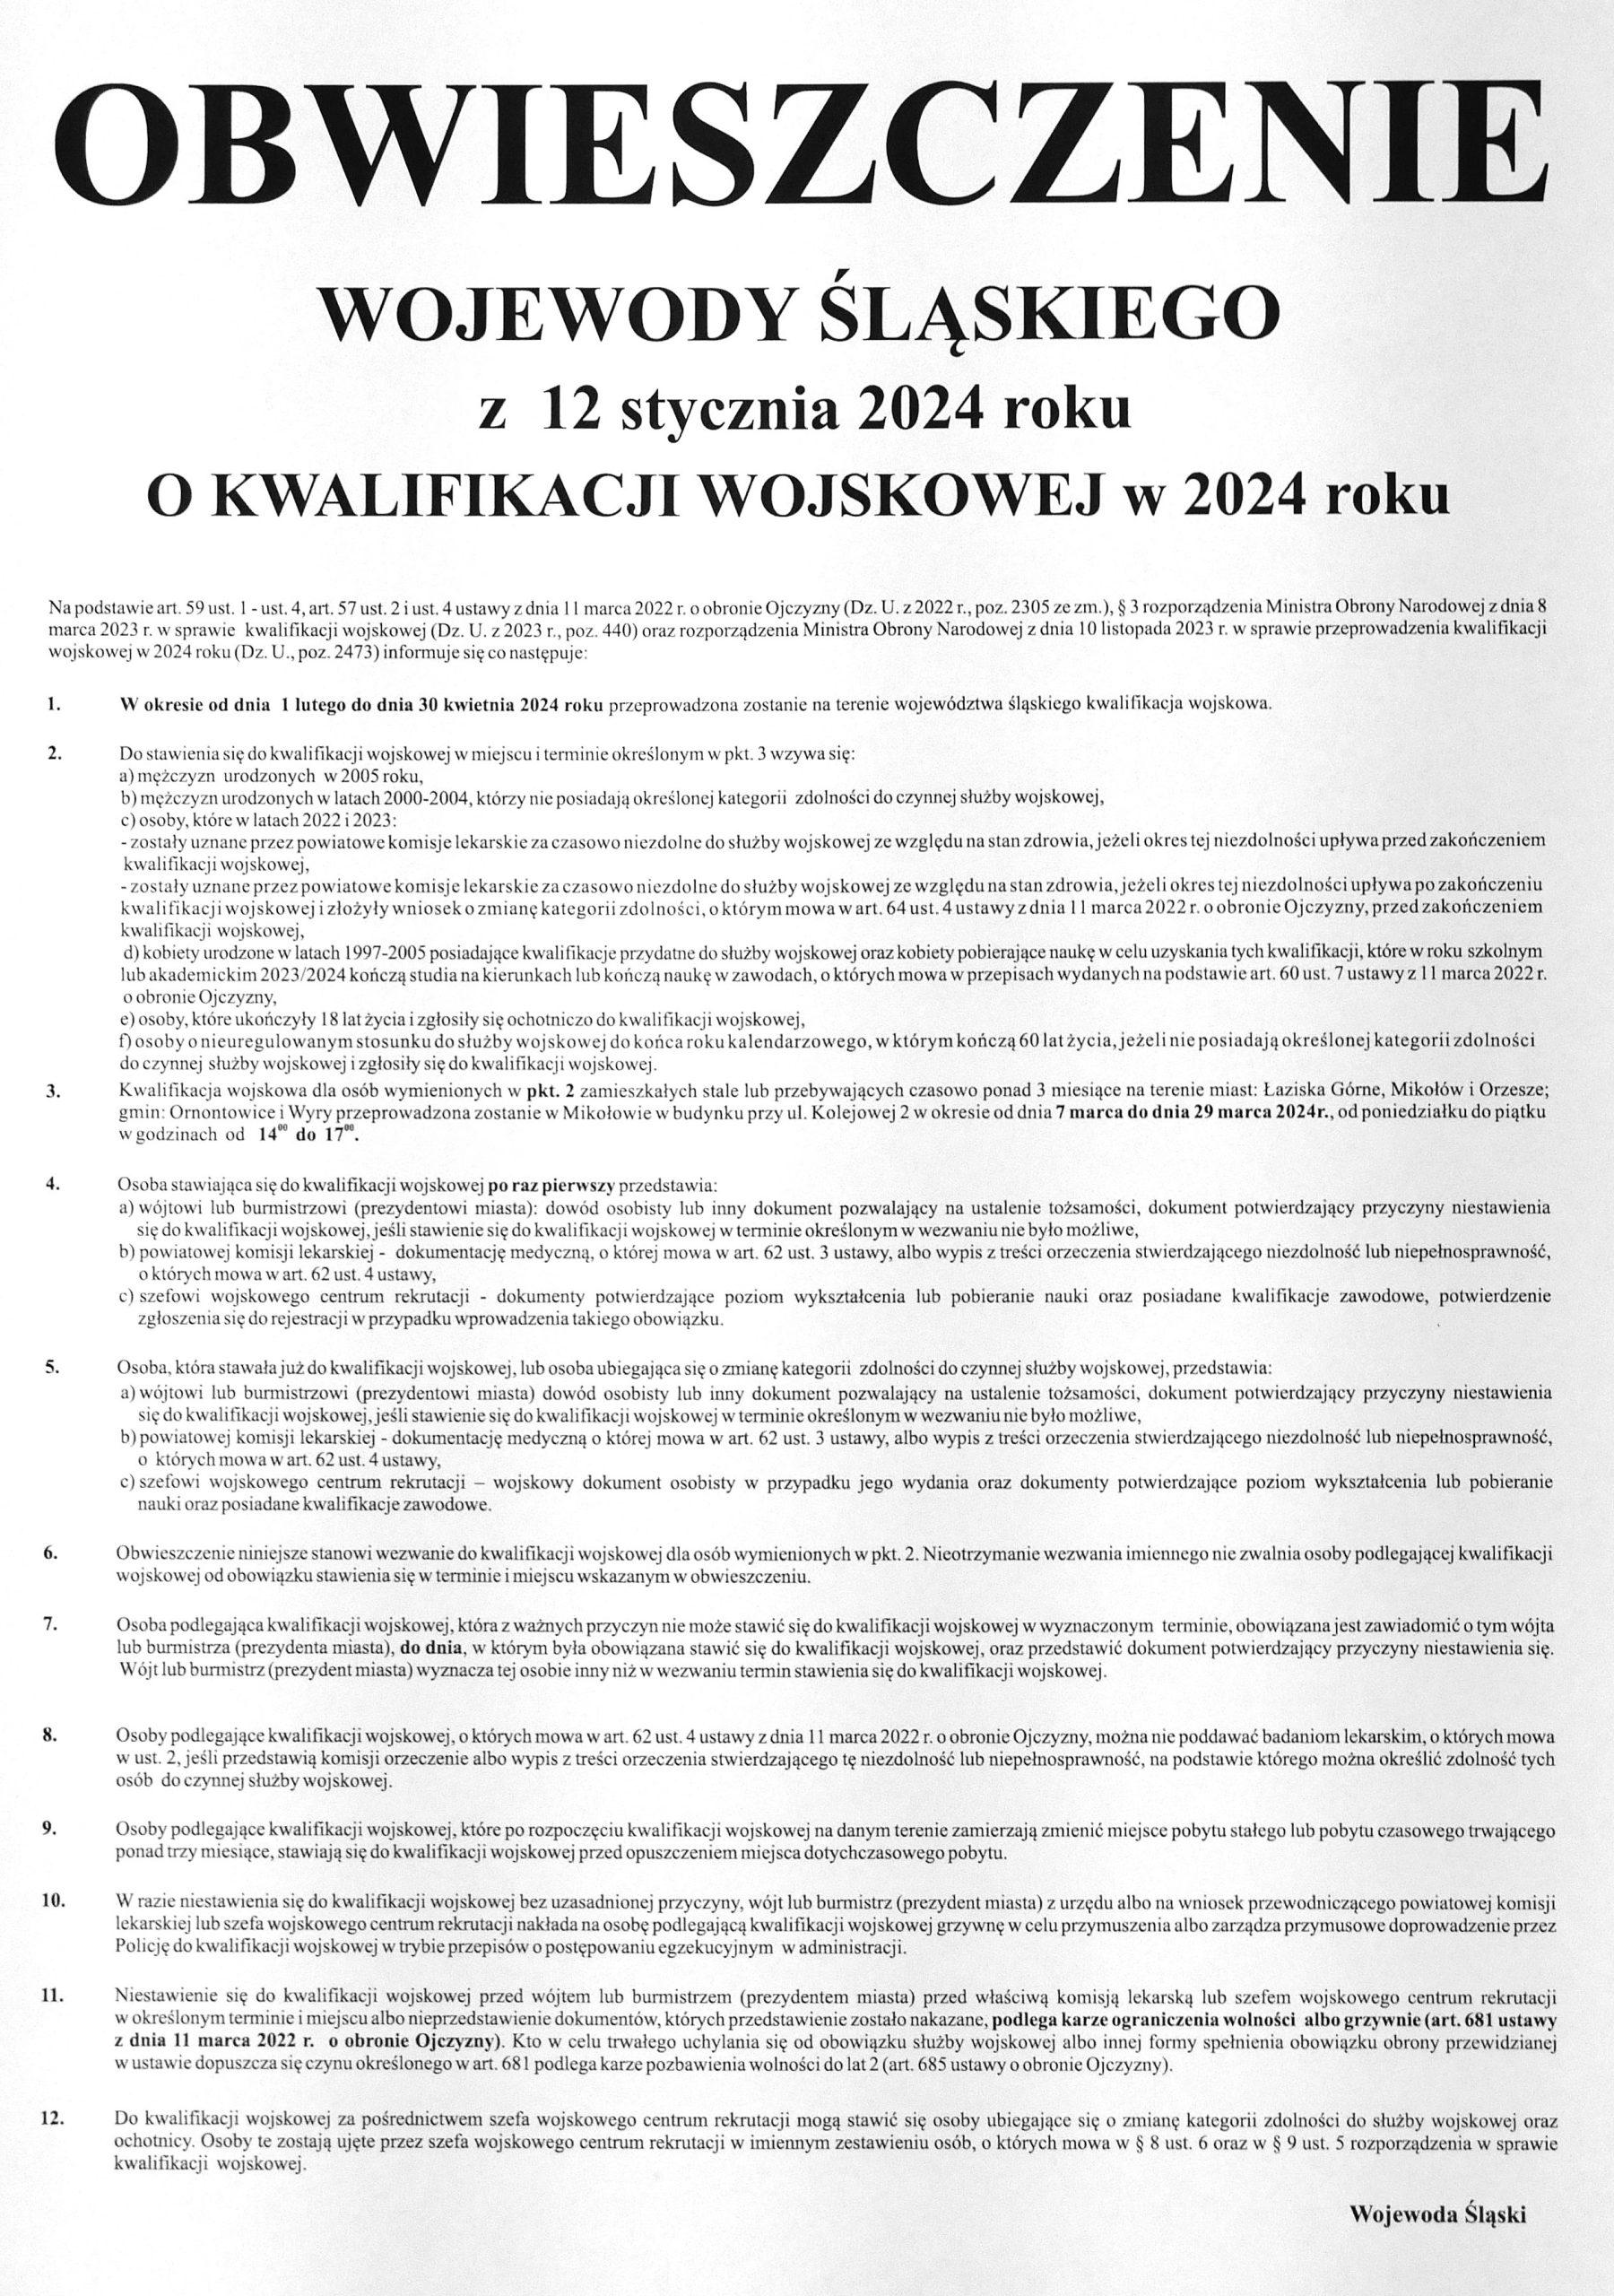 Obwieszczenie wojewody śląskiego o kwalifikacji wojskowej w 2024 roku